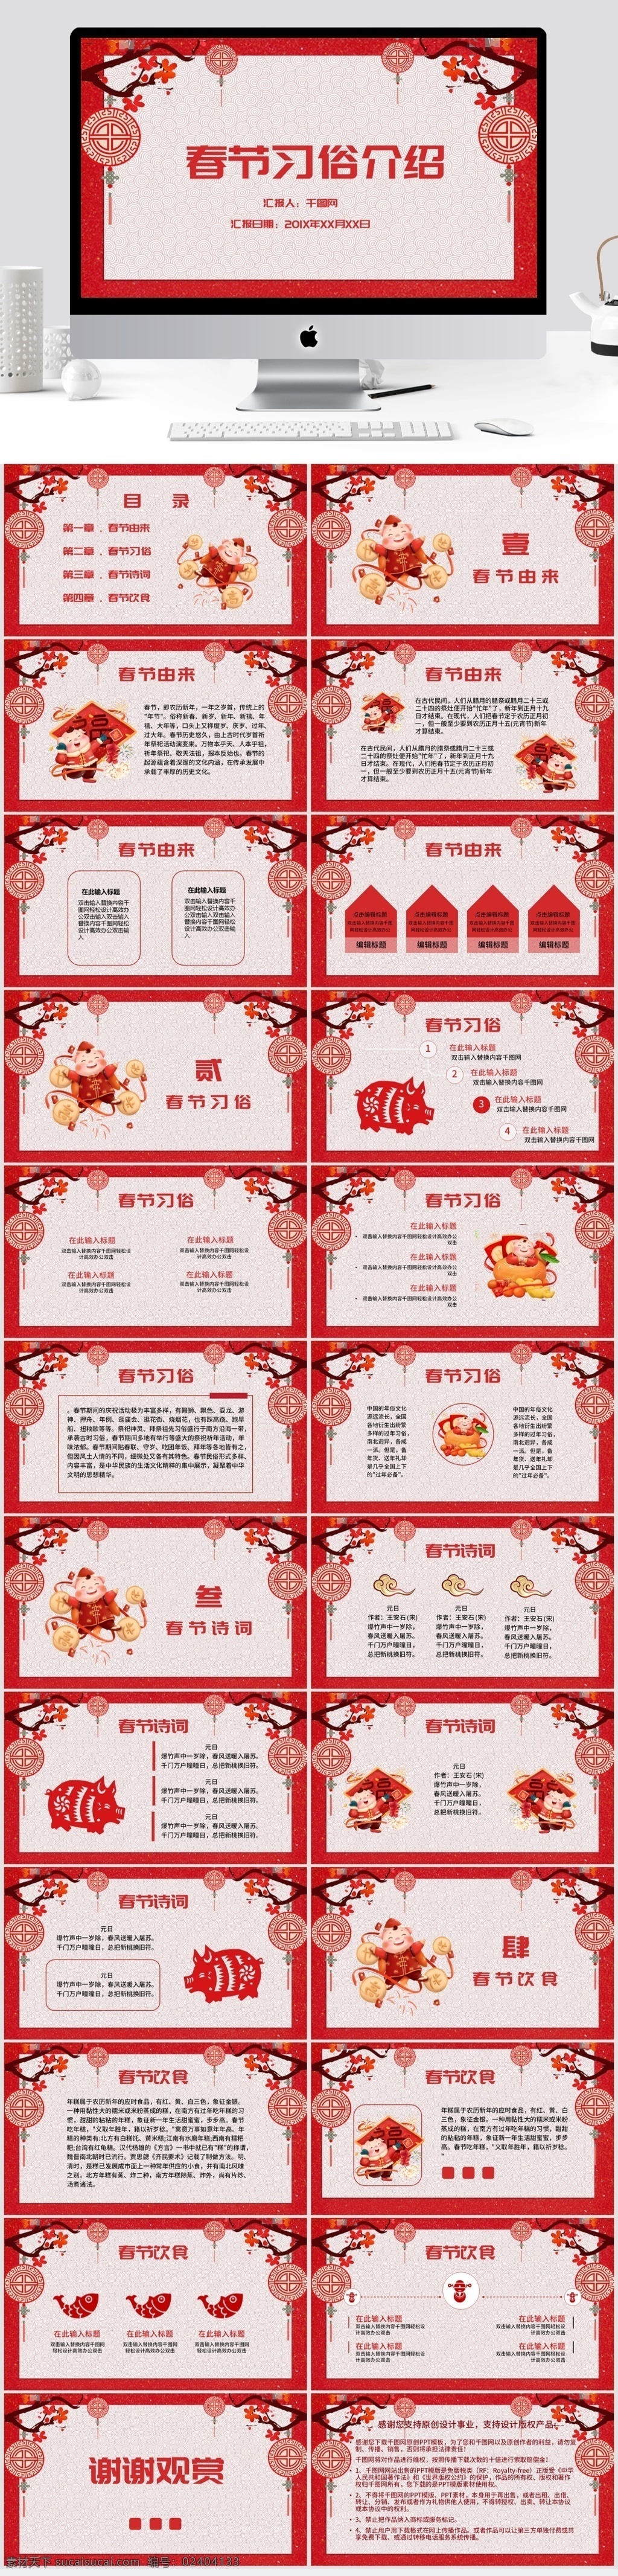 中国 剪纸 风 春节习俗 介绍 中国风 春节 喜庆 年味 红色剪纸 习俗介绍 猪元素